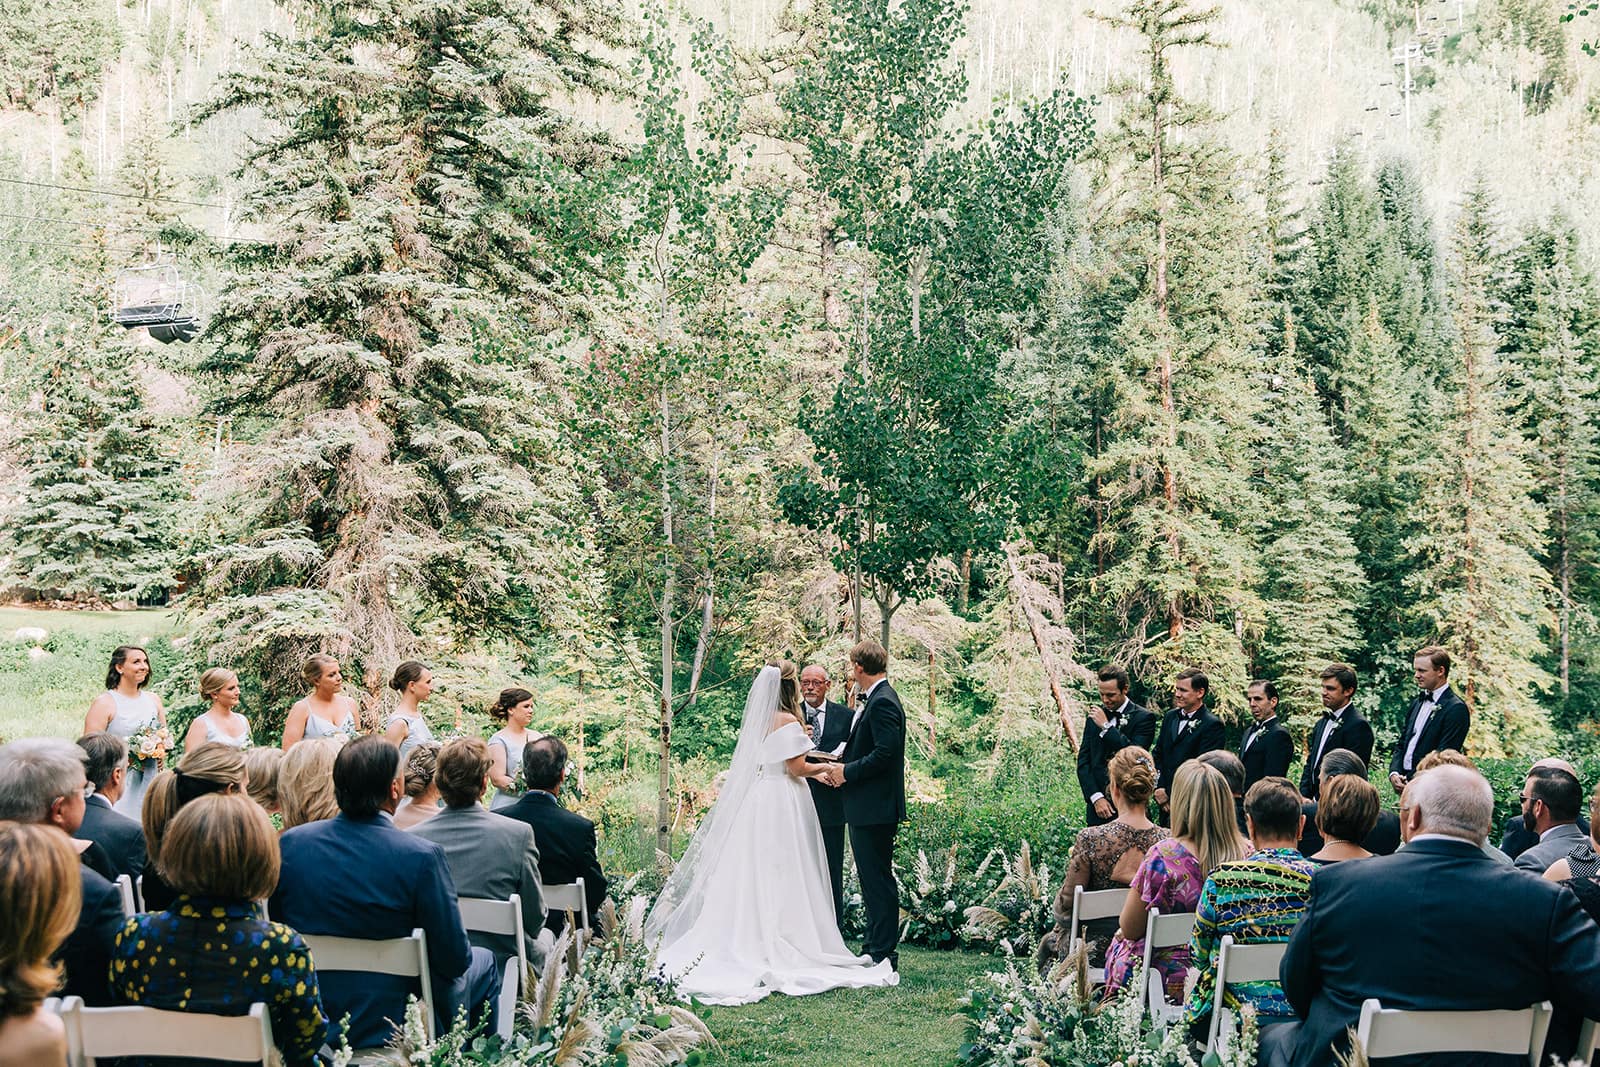 Summer wedding ceremony at the Grand Hyatt in Vail, Colorado